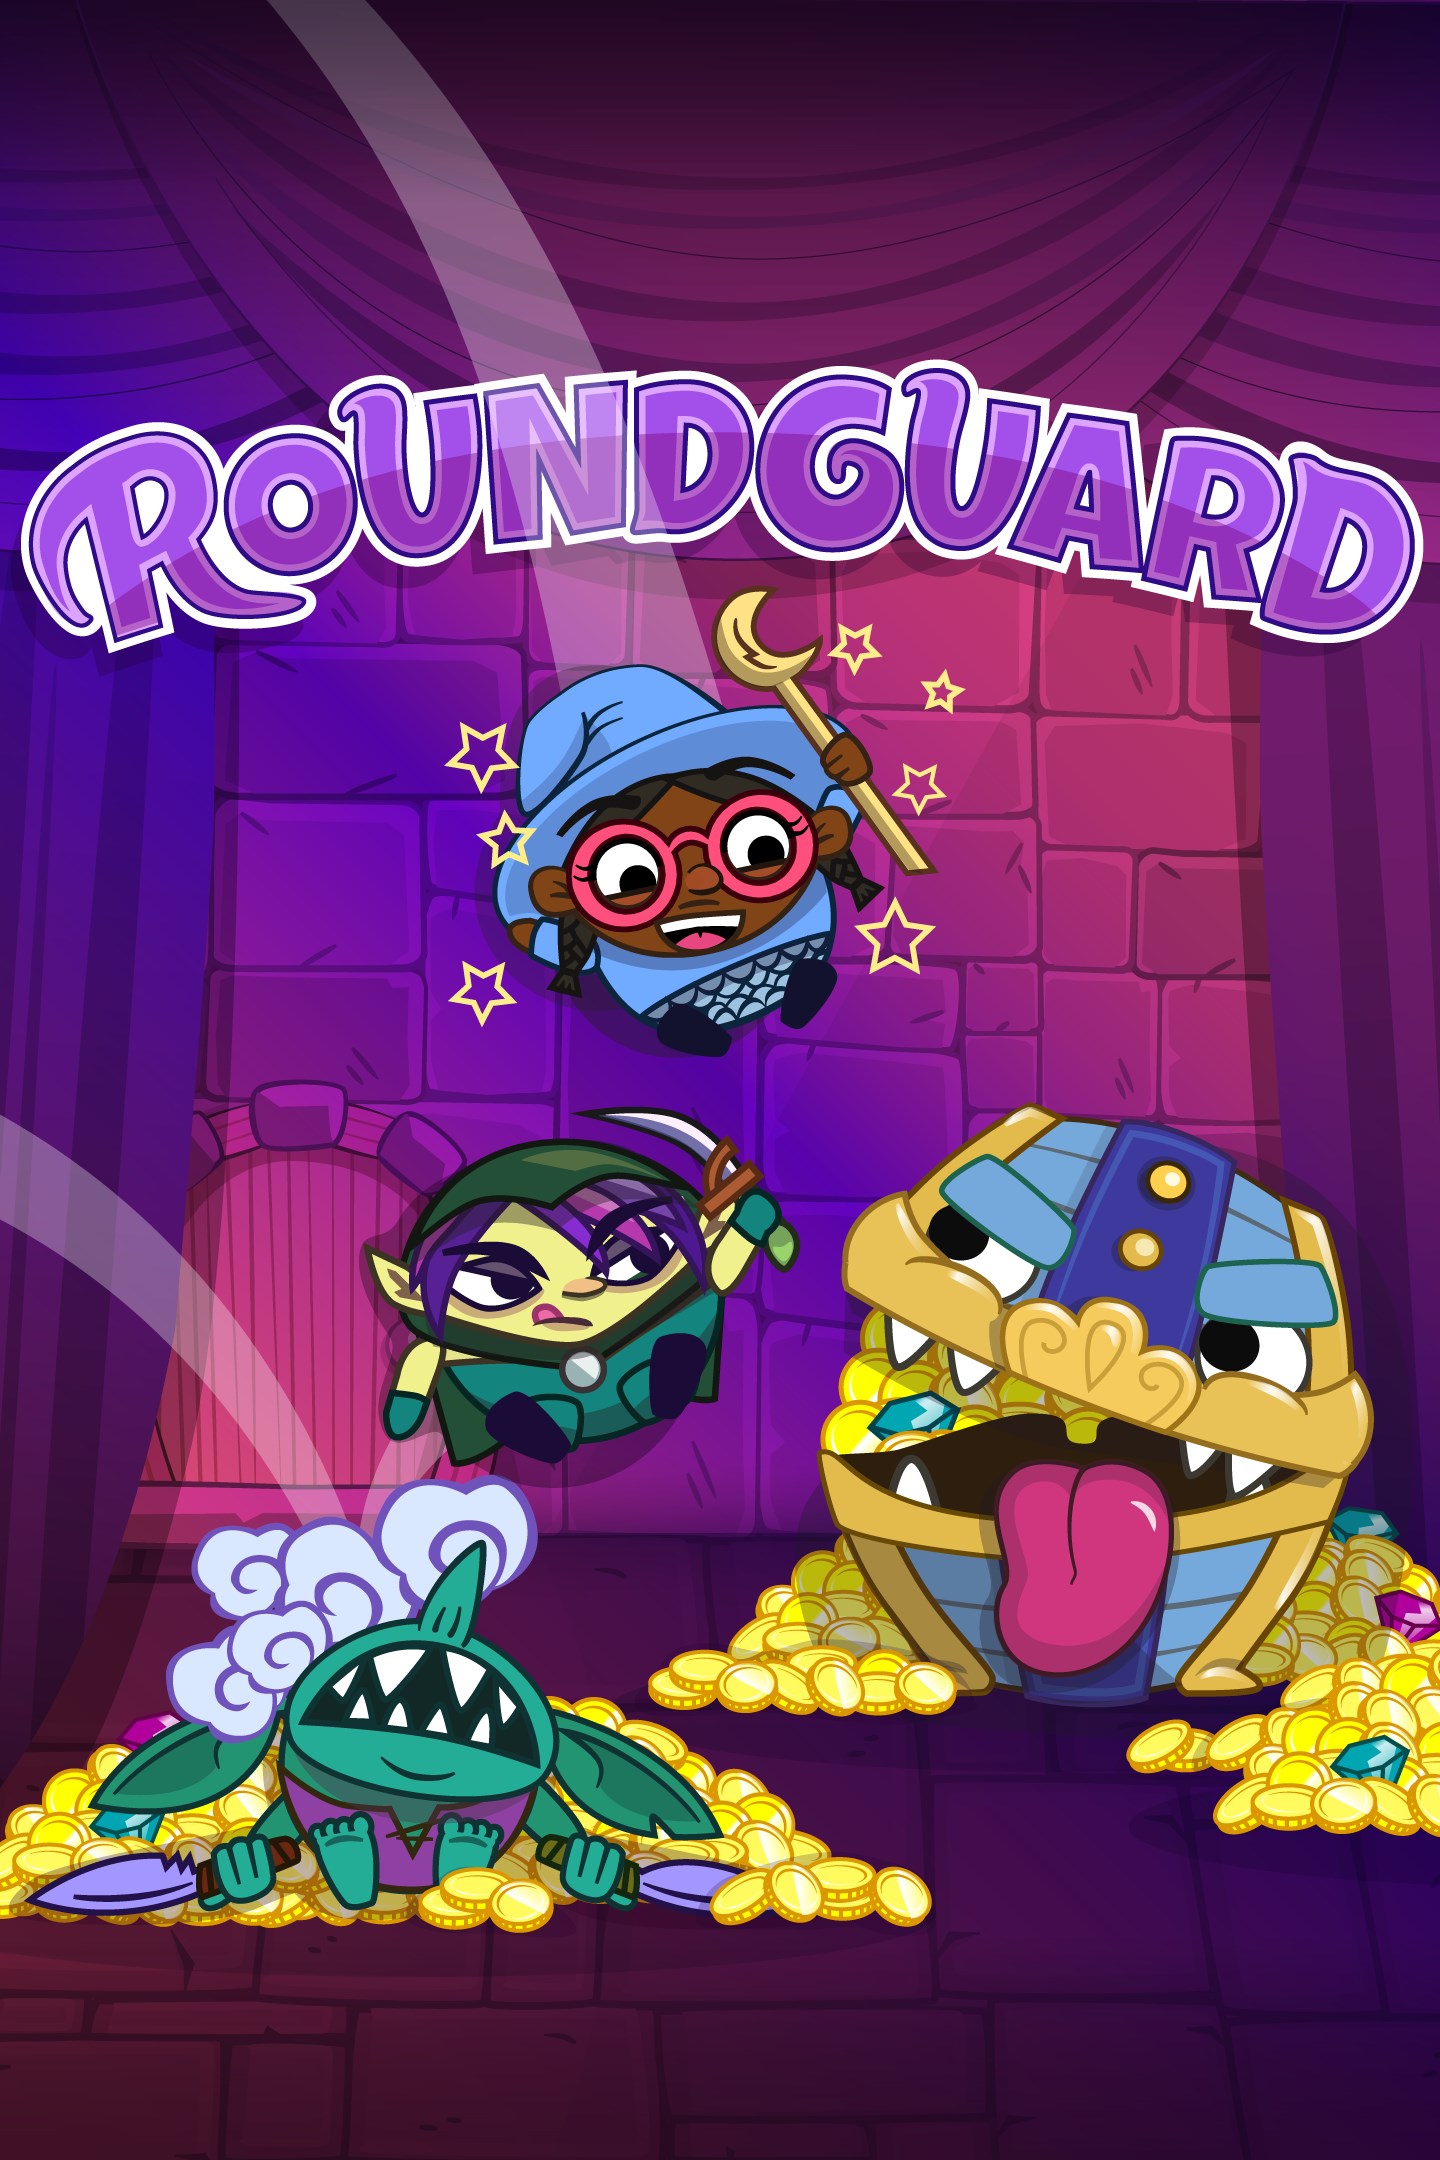 Roundguard porta la sua combinazione unica di Dungeon Crawler e Bouncy Physics su Xbox One